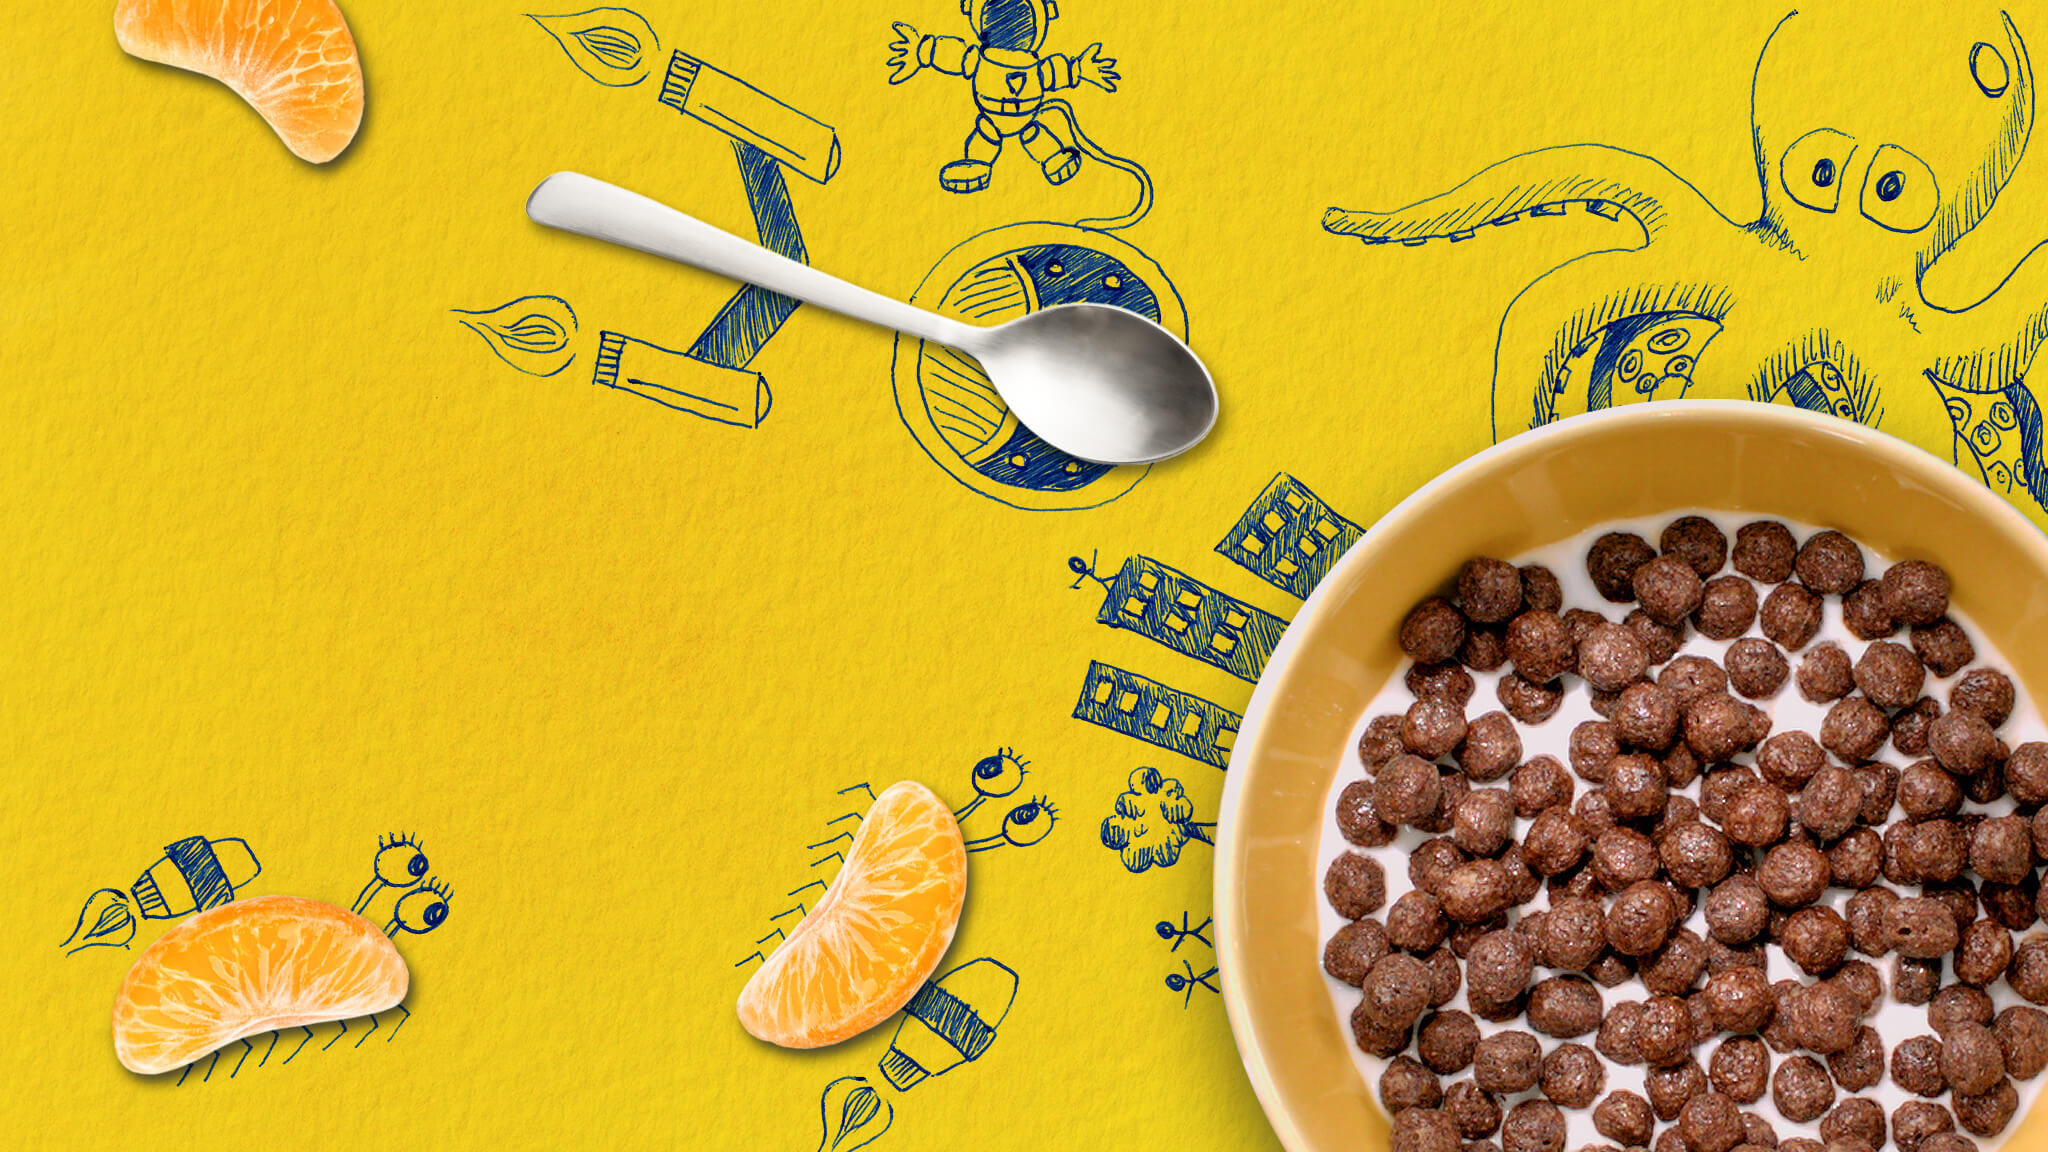 Cereales Nesquik sigue innovando para proporcionar una alimentación balanceada. Foto Prensa Libre: Cortesía